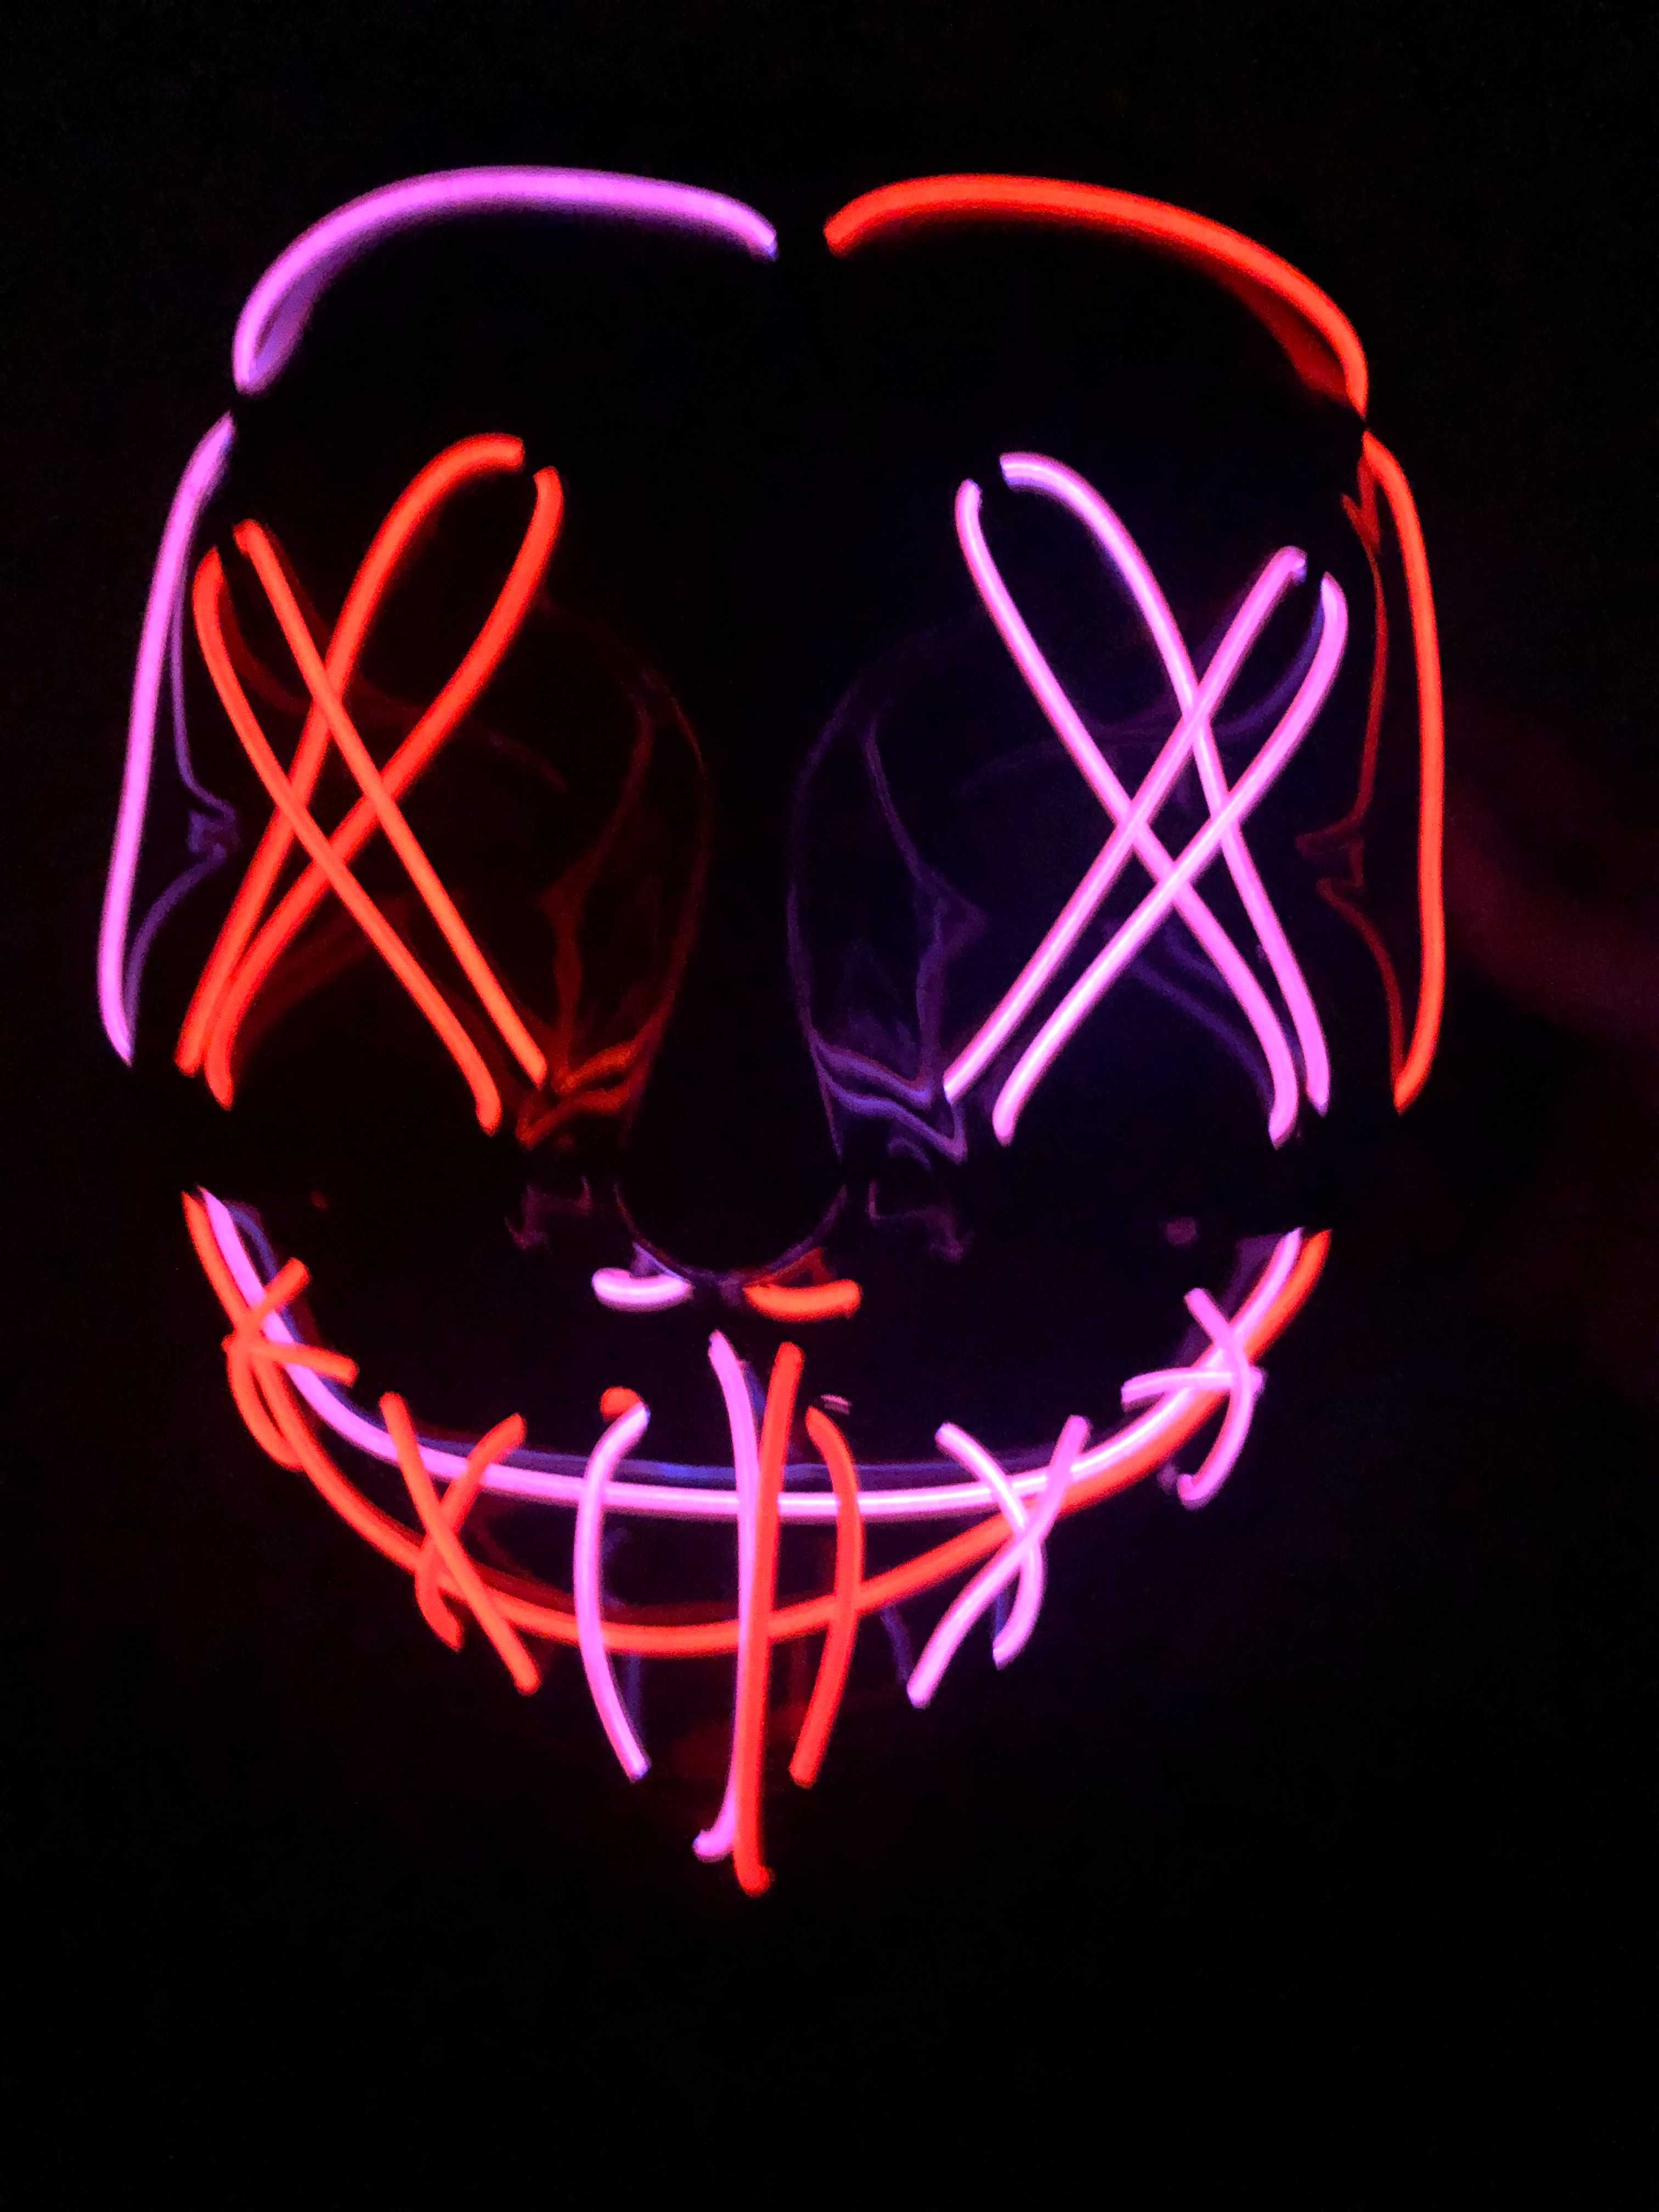 Máscara nova LED